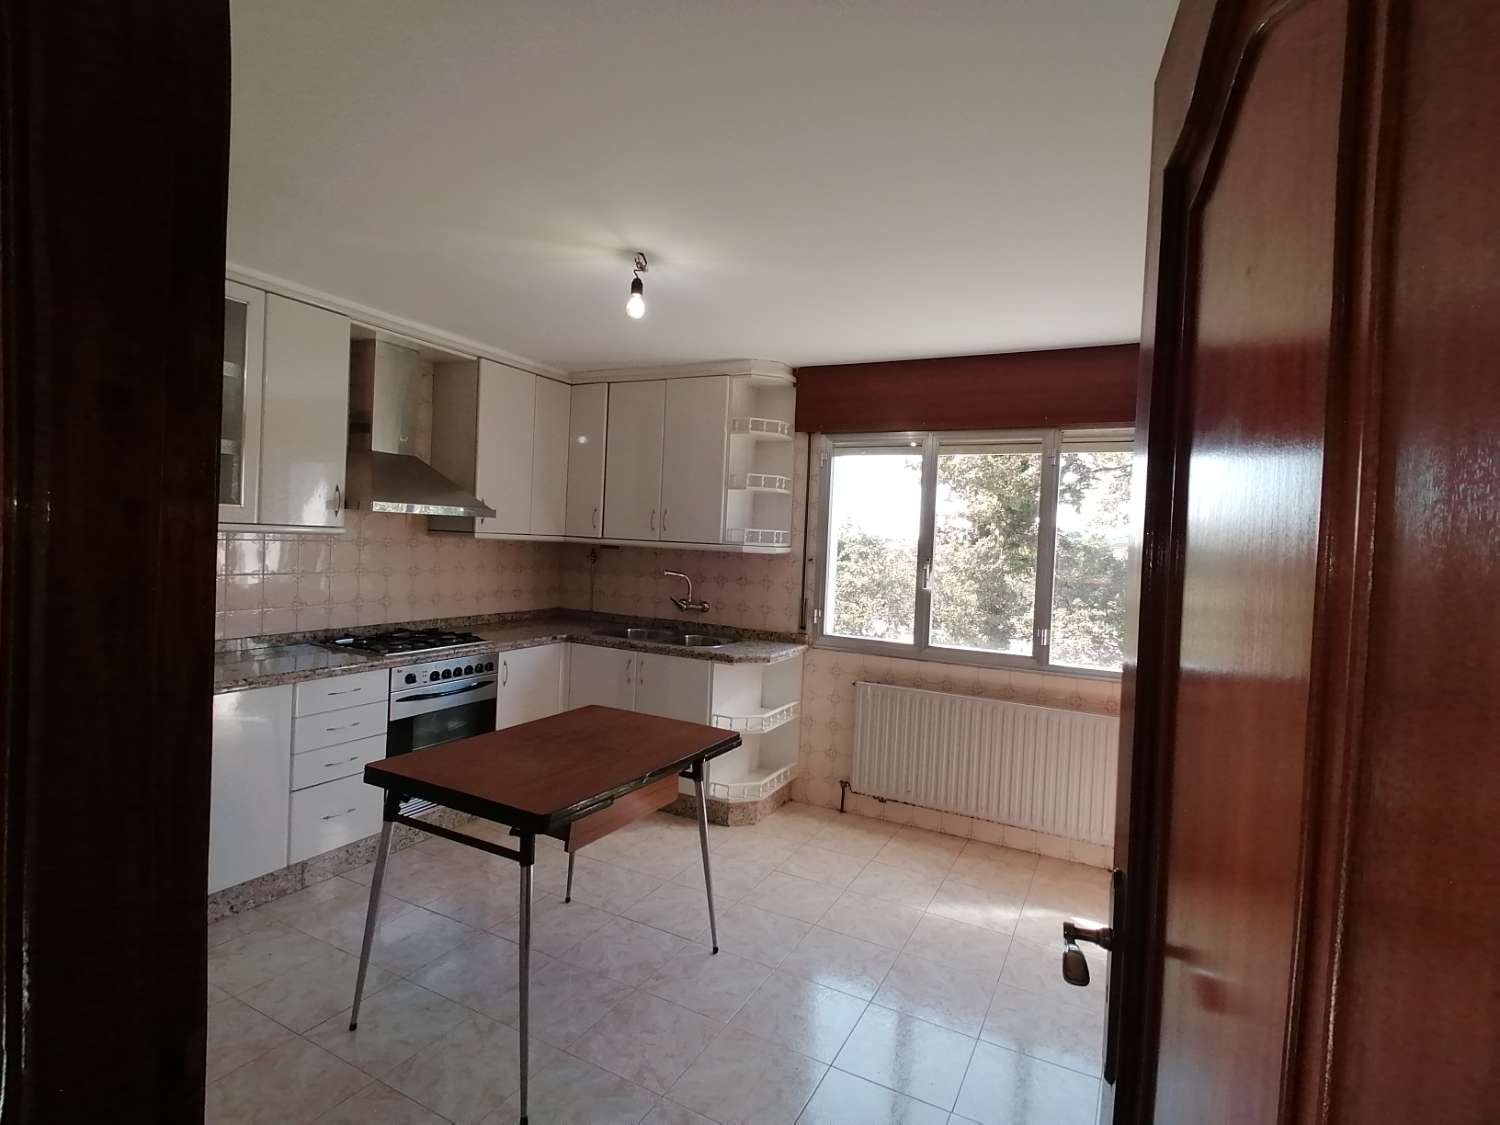 Pontevedra: A7134: Huis met finca te koop op 4 km van Pontevedra...